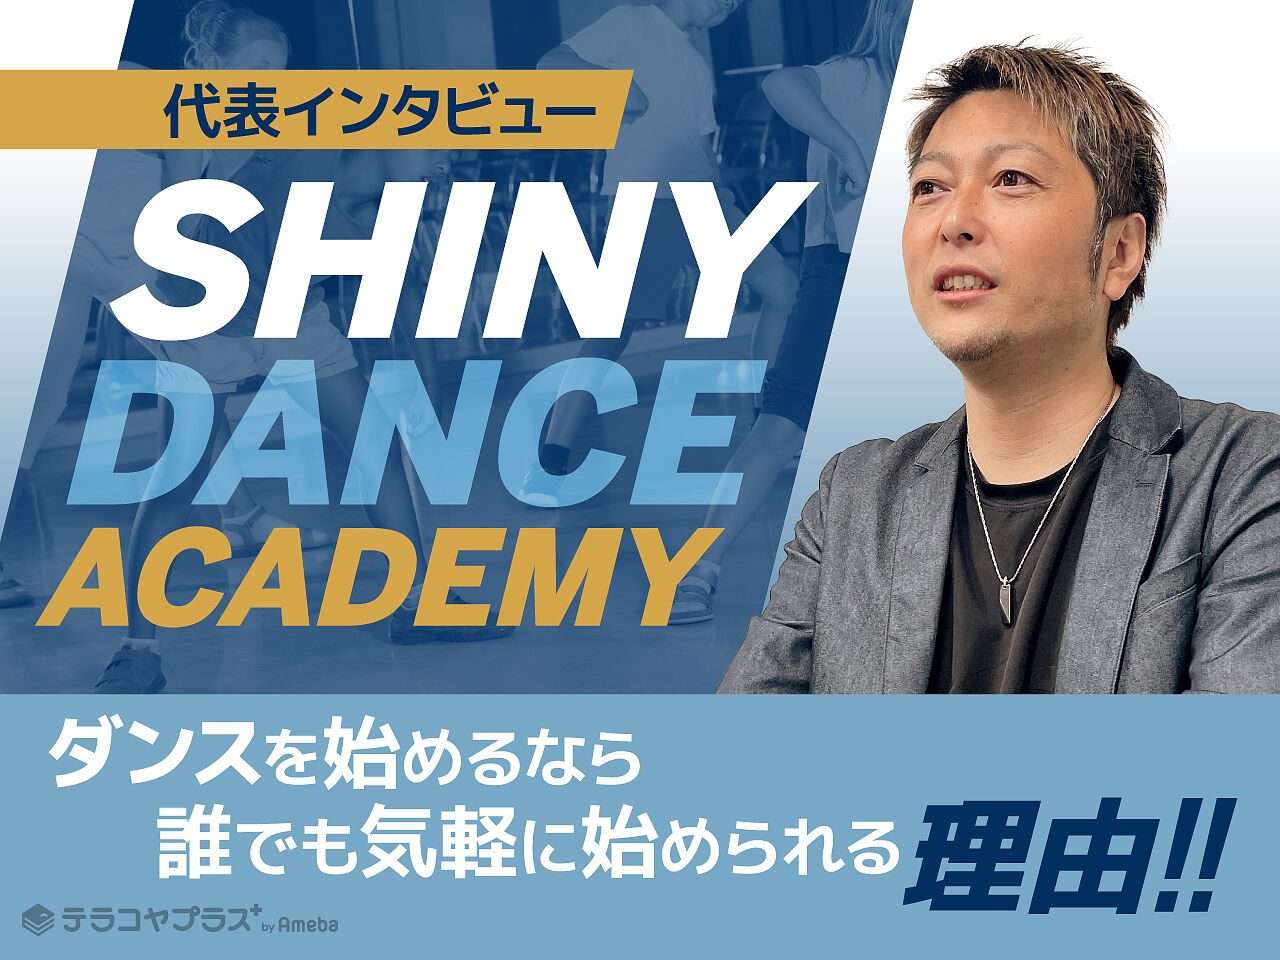 ダンスを始めるなら「SHINY DANCE ACADEMY」！誰でも気軽に始められる理由をインタビューの画像